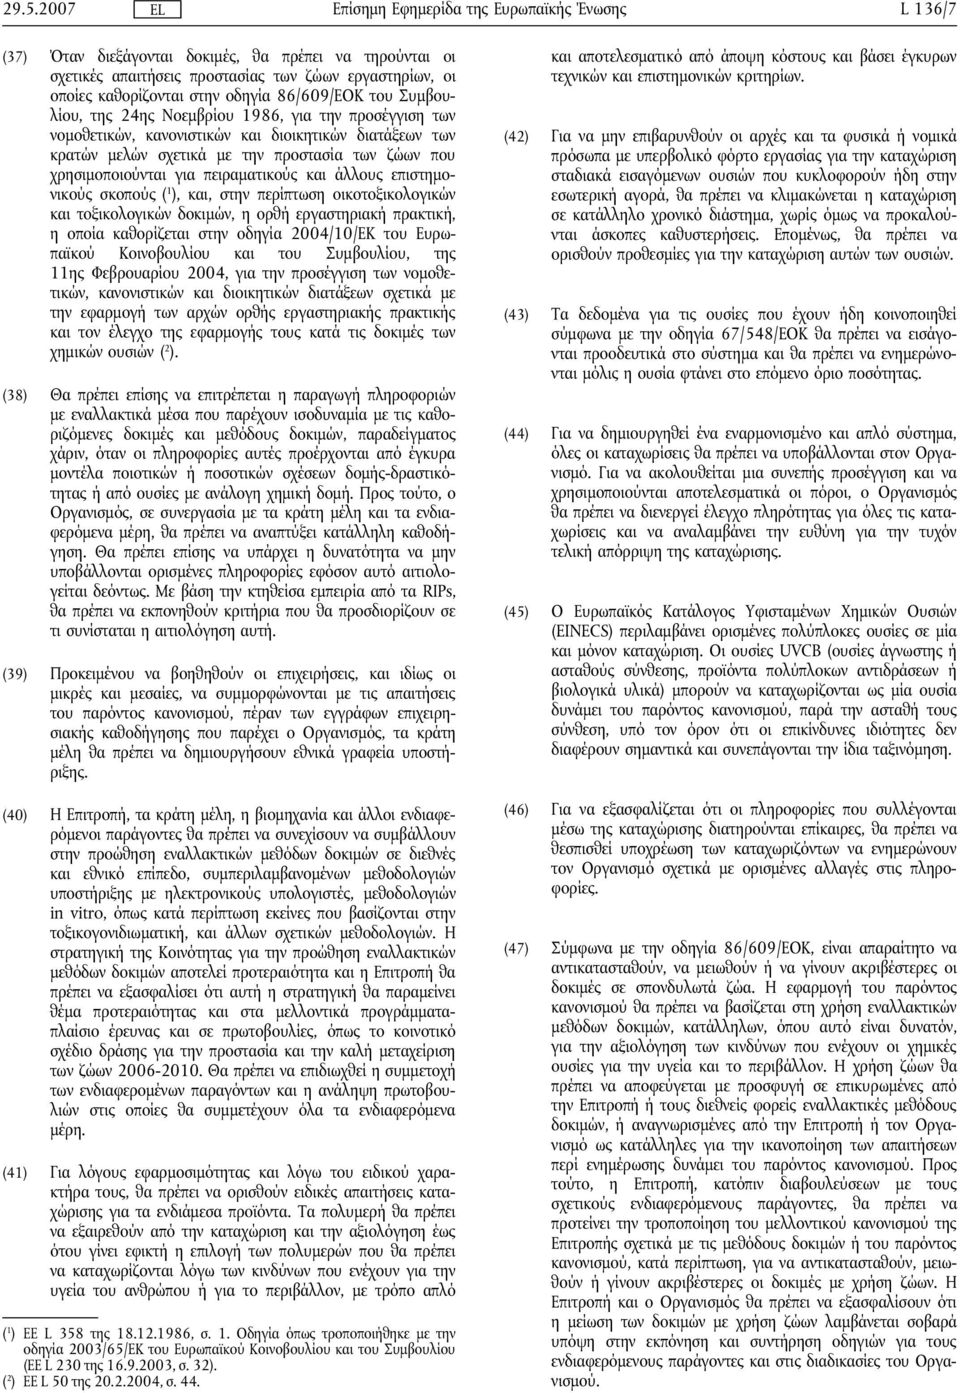 επιστημονικούς σκοπούς ( 1, και, στην περίπτωση οικοτοξικολογικών και τοξικολογικών δοκιμών, η ορθή εργαστηριακή πρακτική, η οποία καθορίζεται στην οδηγία 2004/10/ΕΚ του Ευρωπαϊκού Κοινοβουλίου και